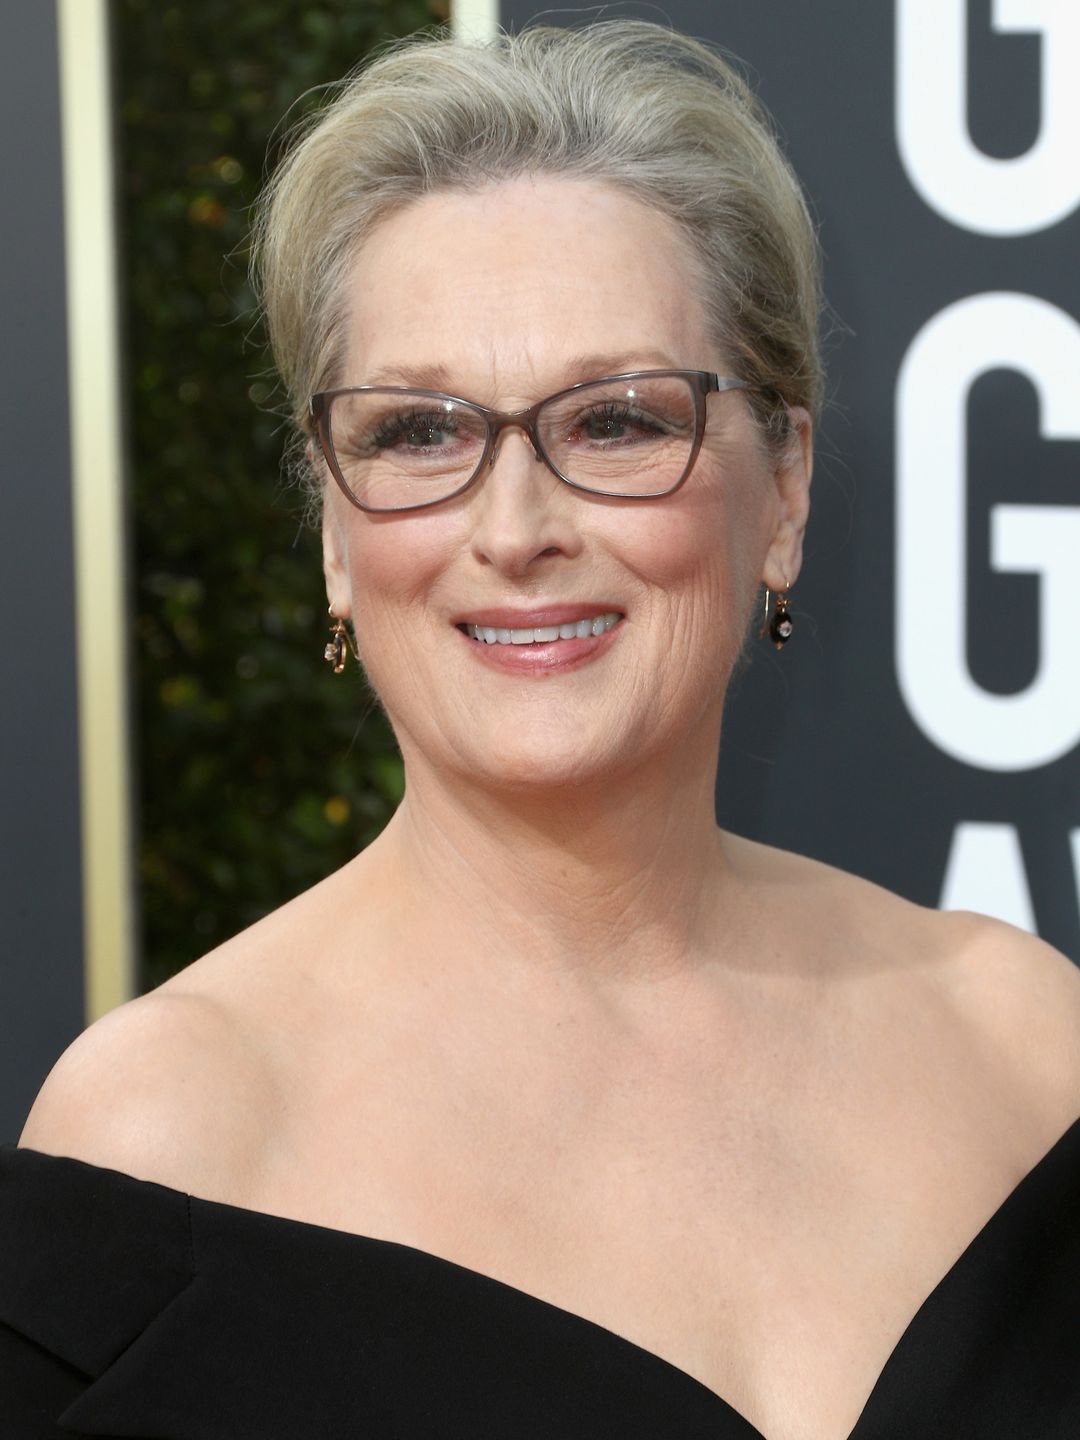 Meryl Streep current look